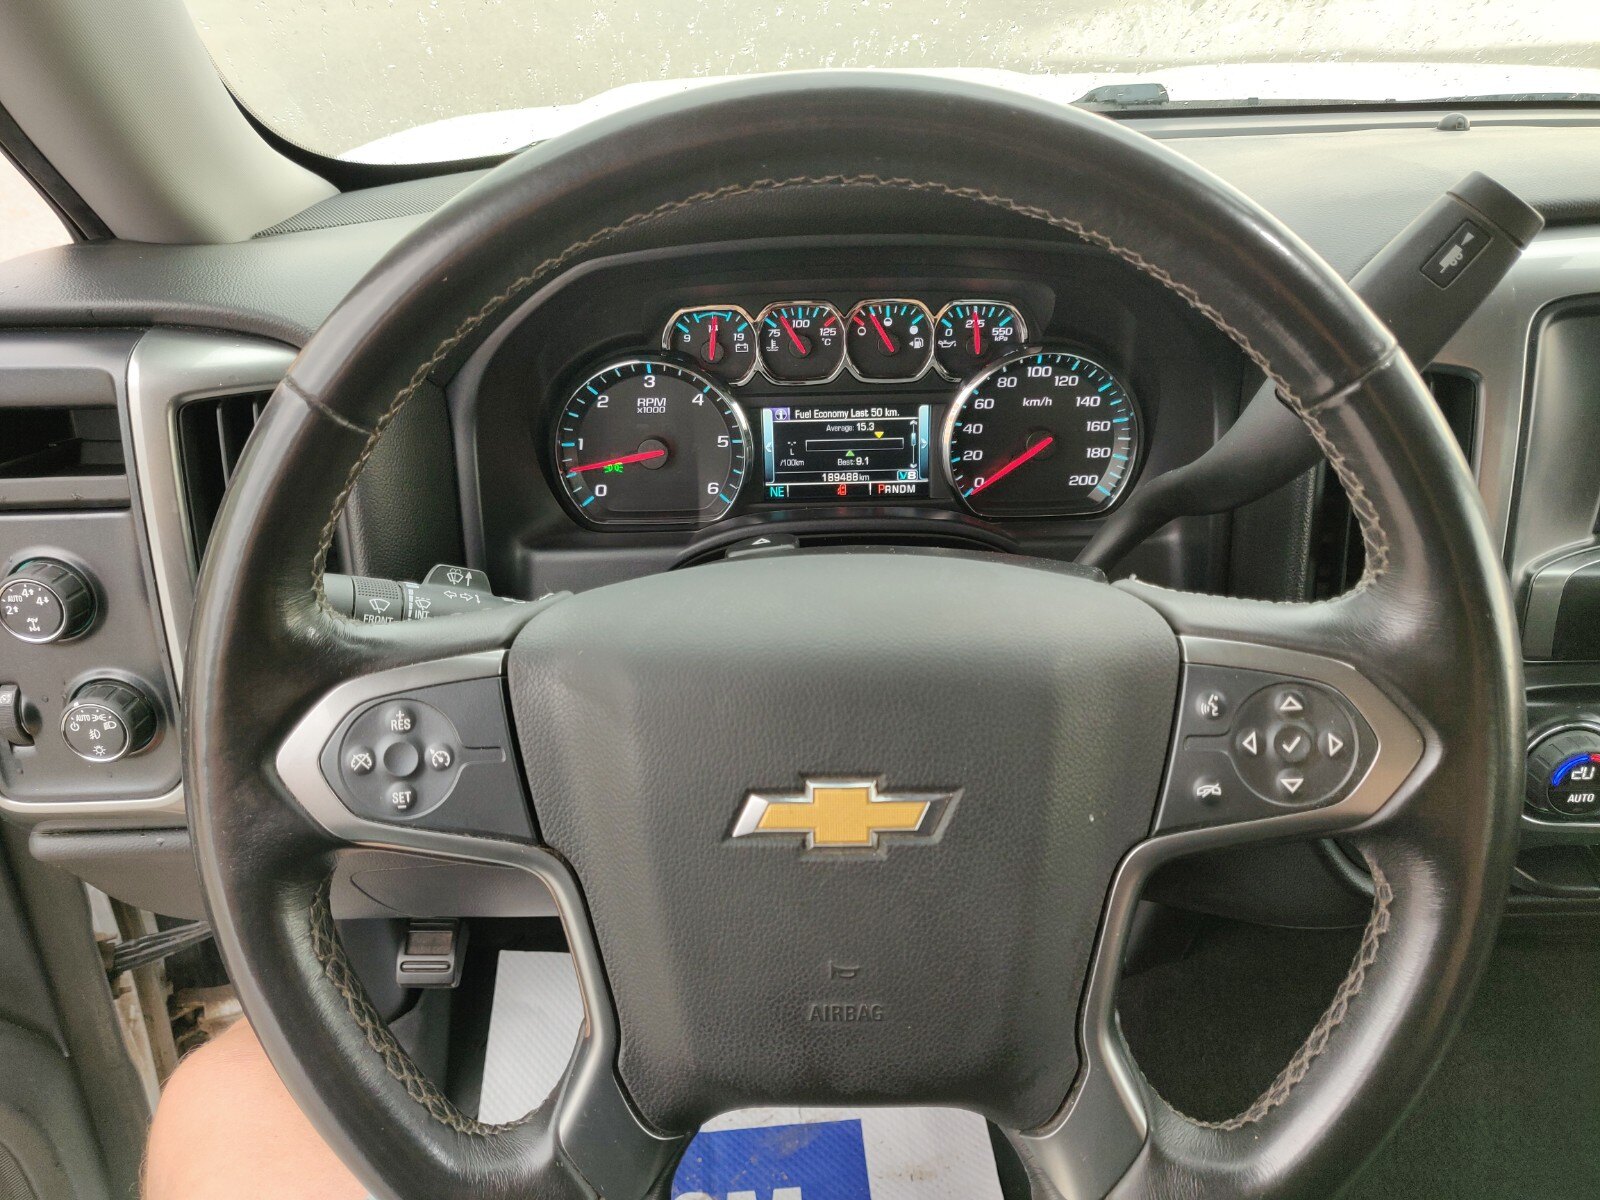 2015 Chevrolet Silverado LT 1500 4WD Crew